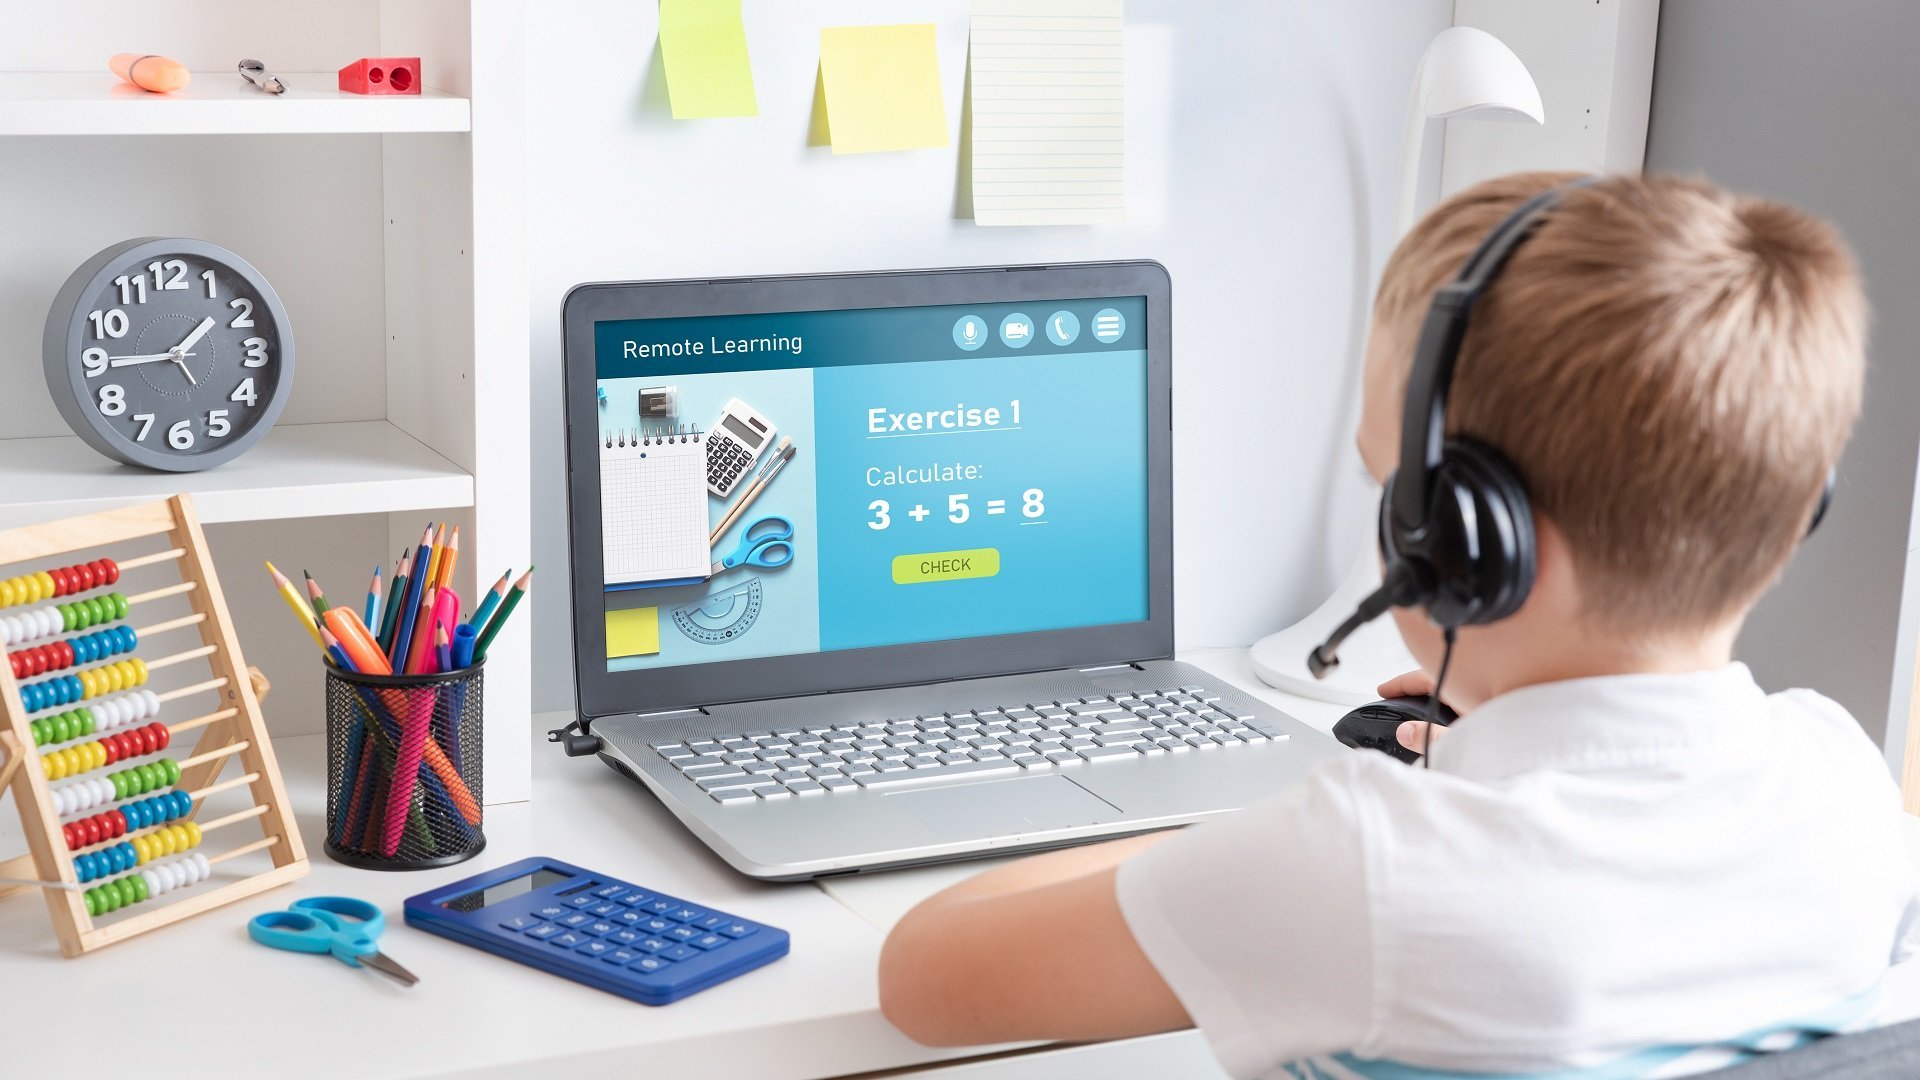 Ein Junge sitzt konzentriert in seinem Kinderzimmer vor einem Laptop. Auf dem Bildschirm ist das Wort "Remote Learning" zu sehen, was auf das virtuelle Lernen hinweist.